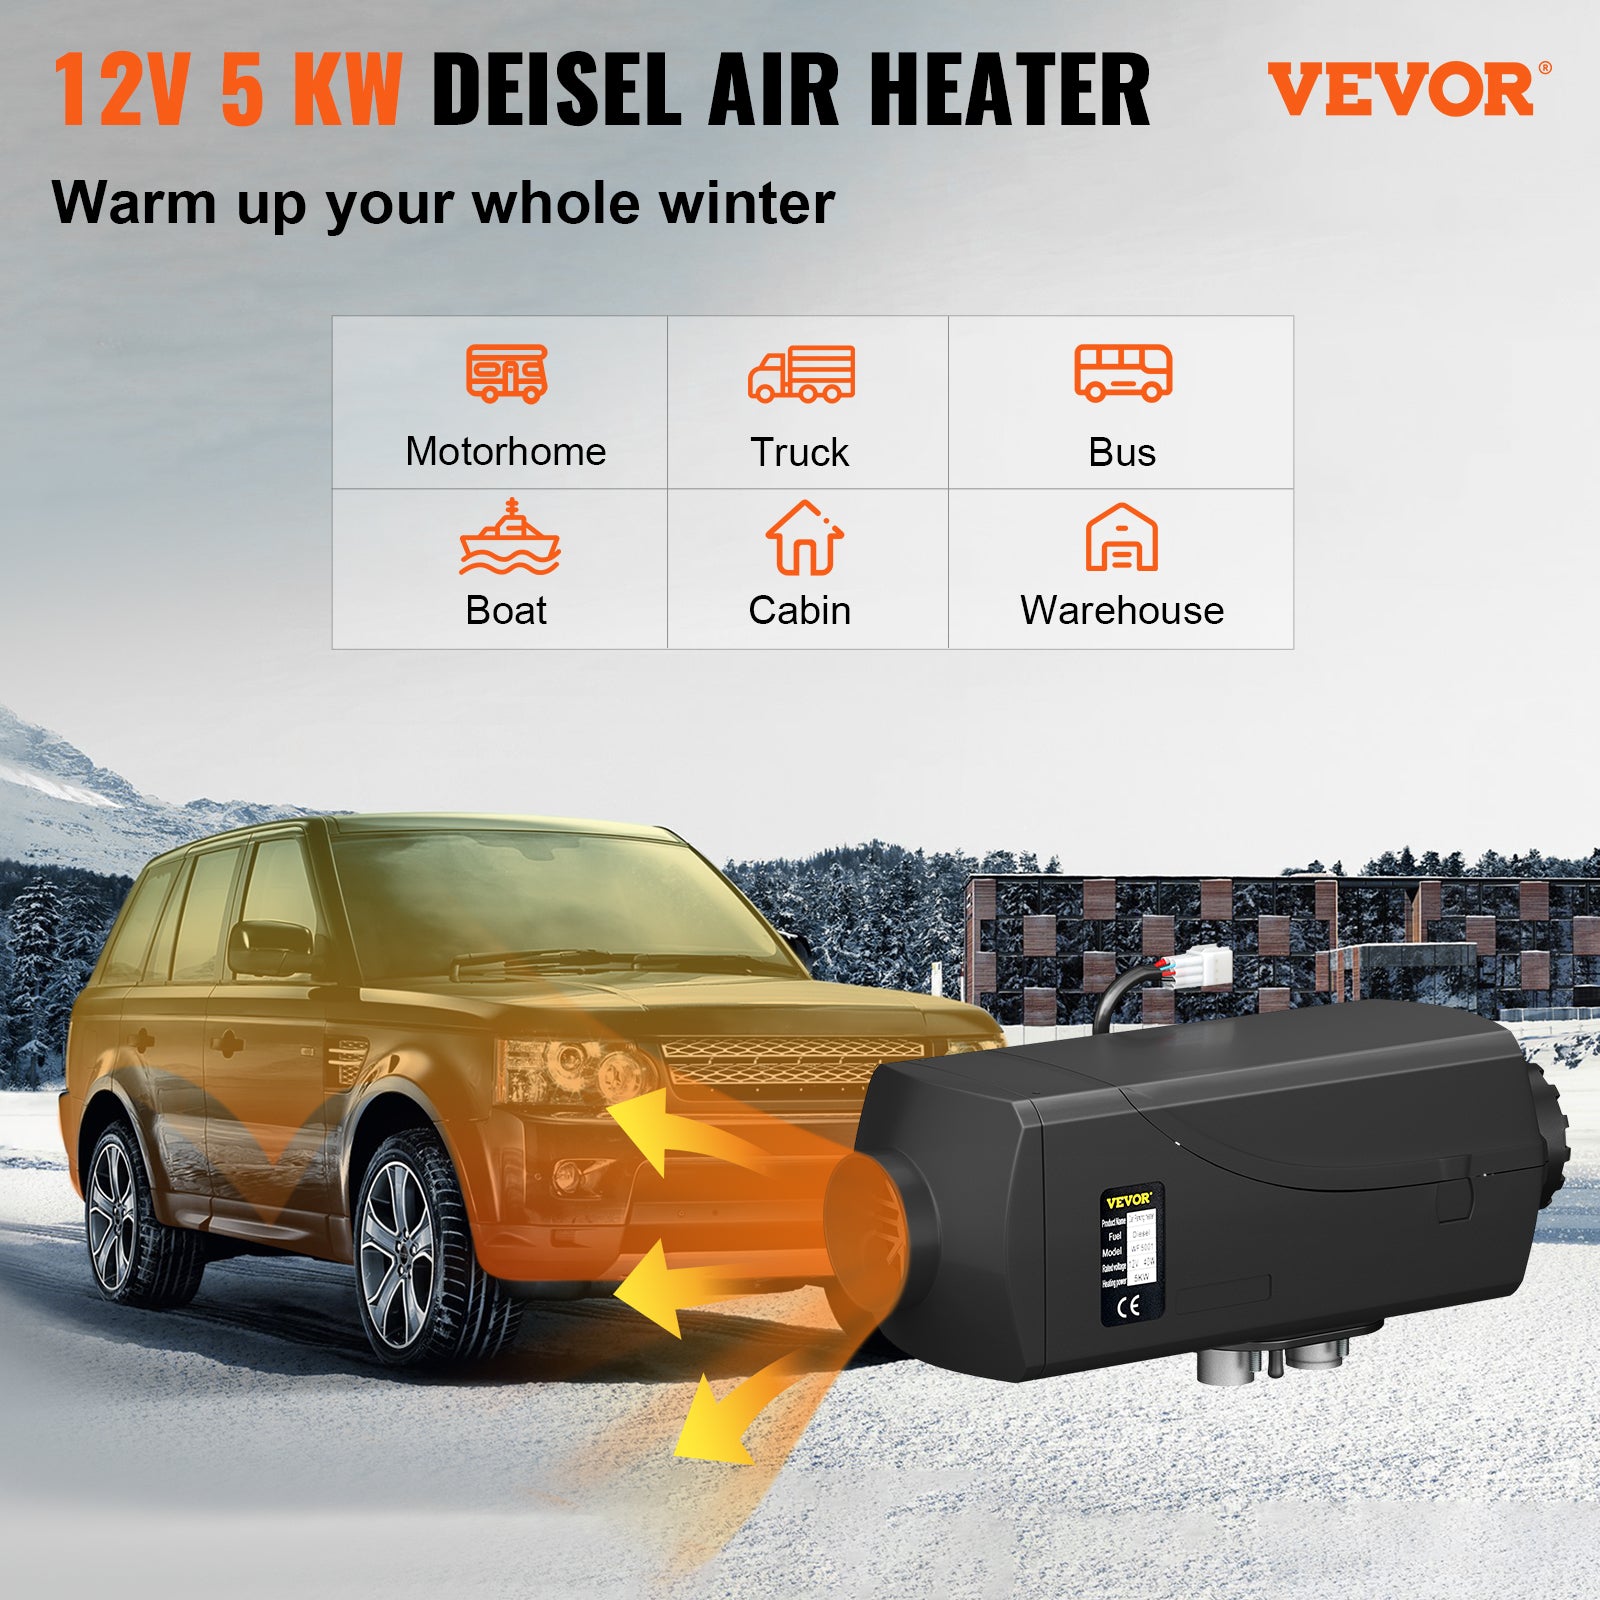 Diesel Luchtverwarmer, Snelle Verwarming, Laag Brandstofverbruik